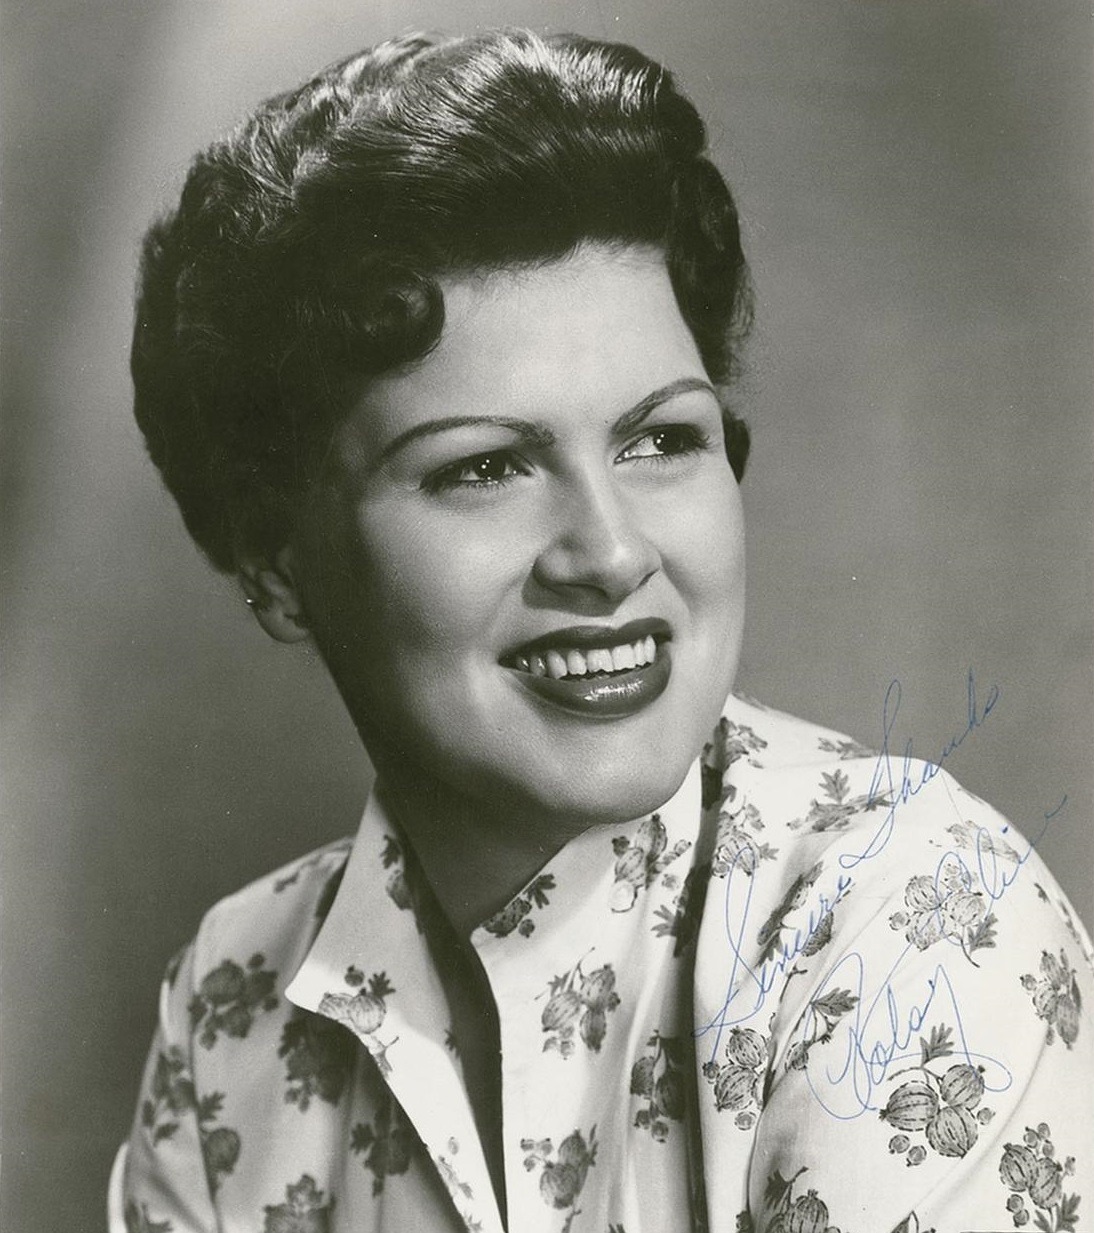 Patsy Cline 1960 publicity portrait